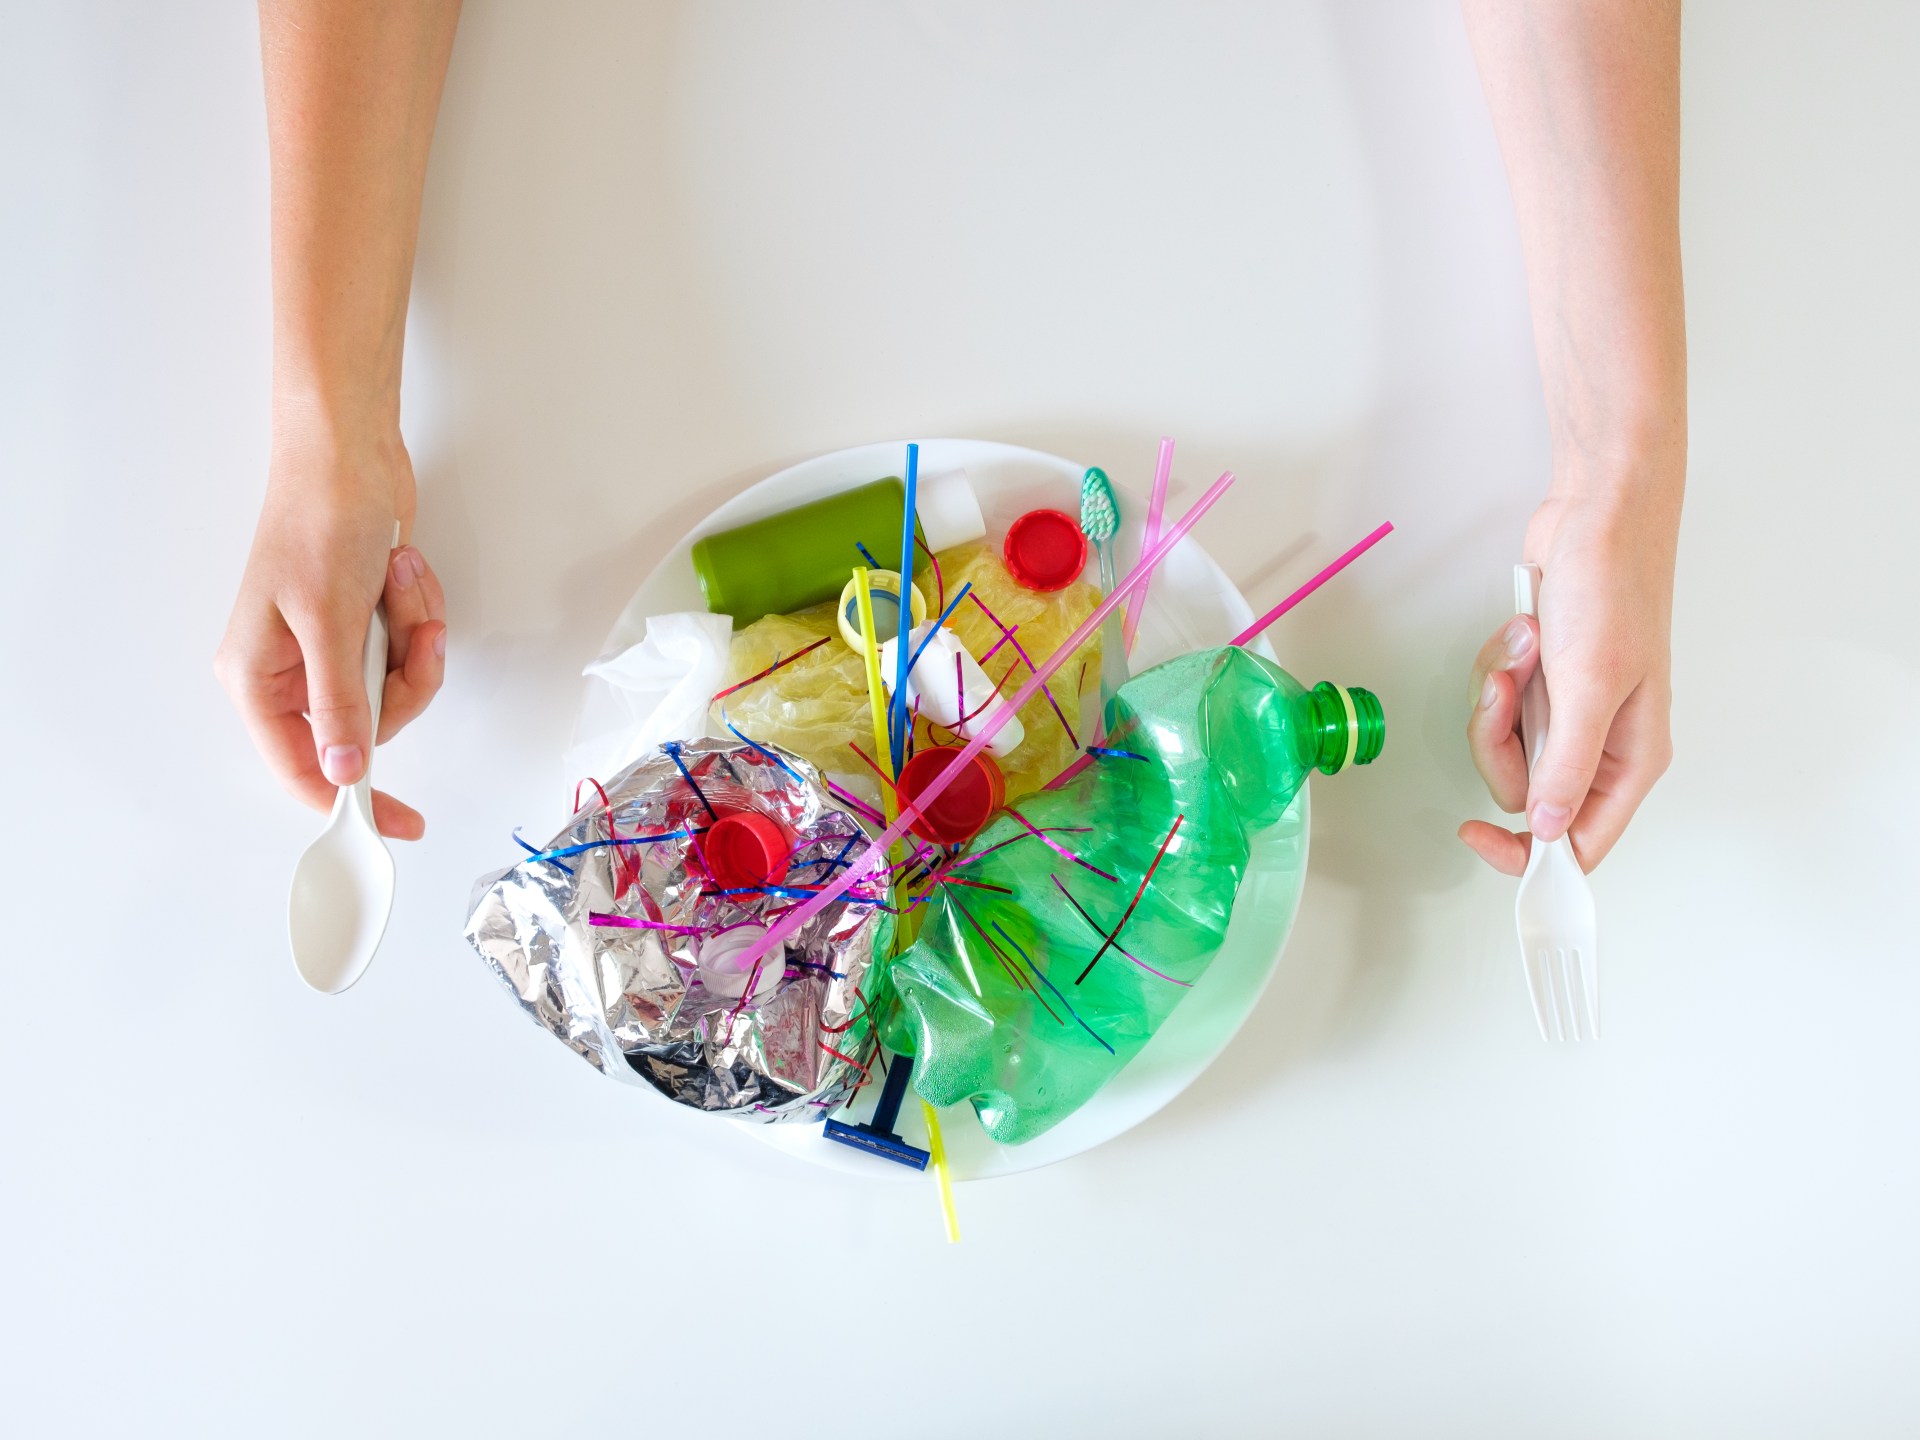 المايكروبلاستيك.. يدمّر النظم البيئية ويهدد صحة الإنسان | علوم – البوكس نيوز